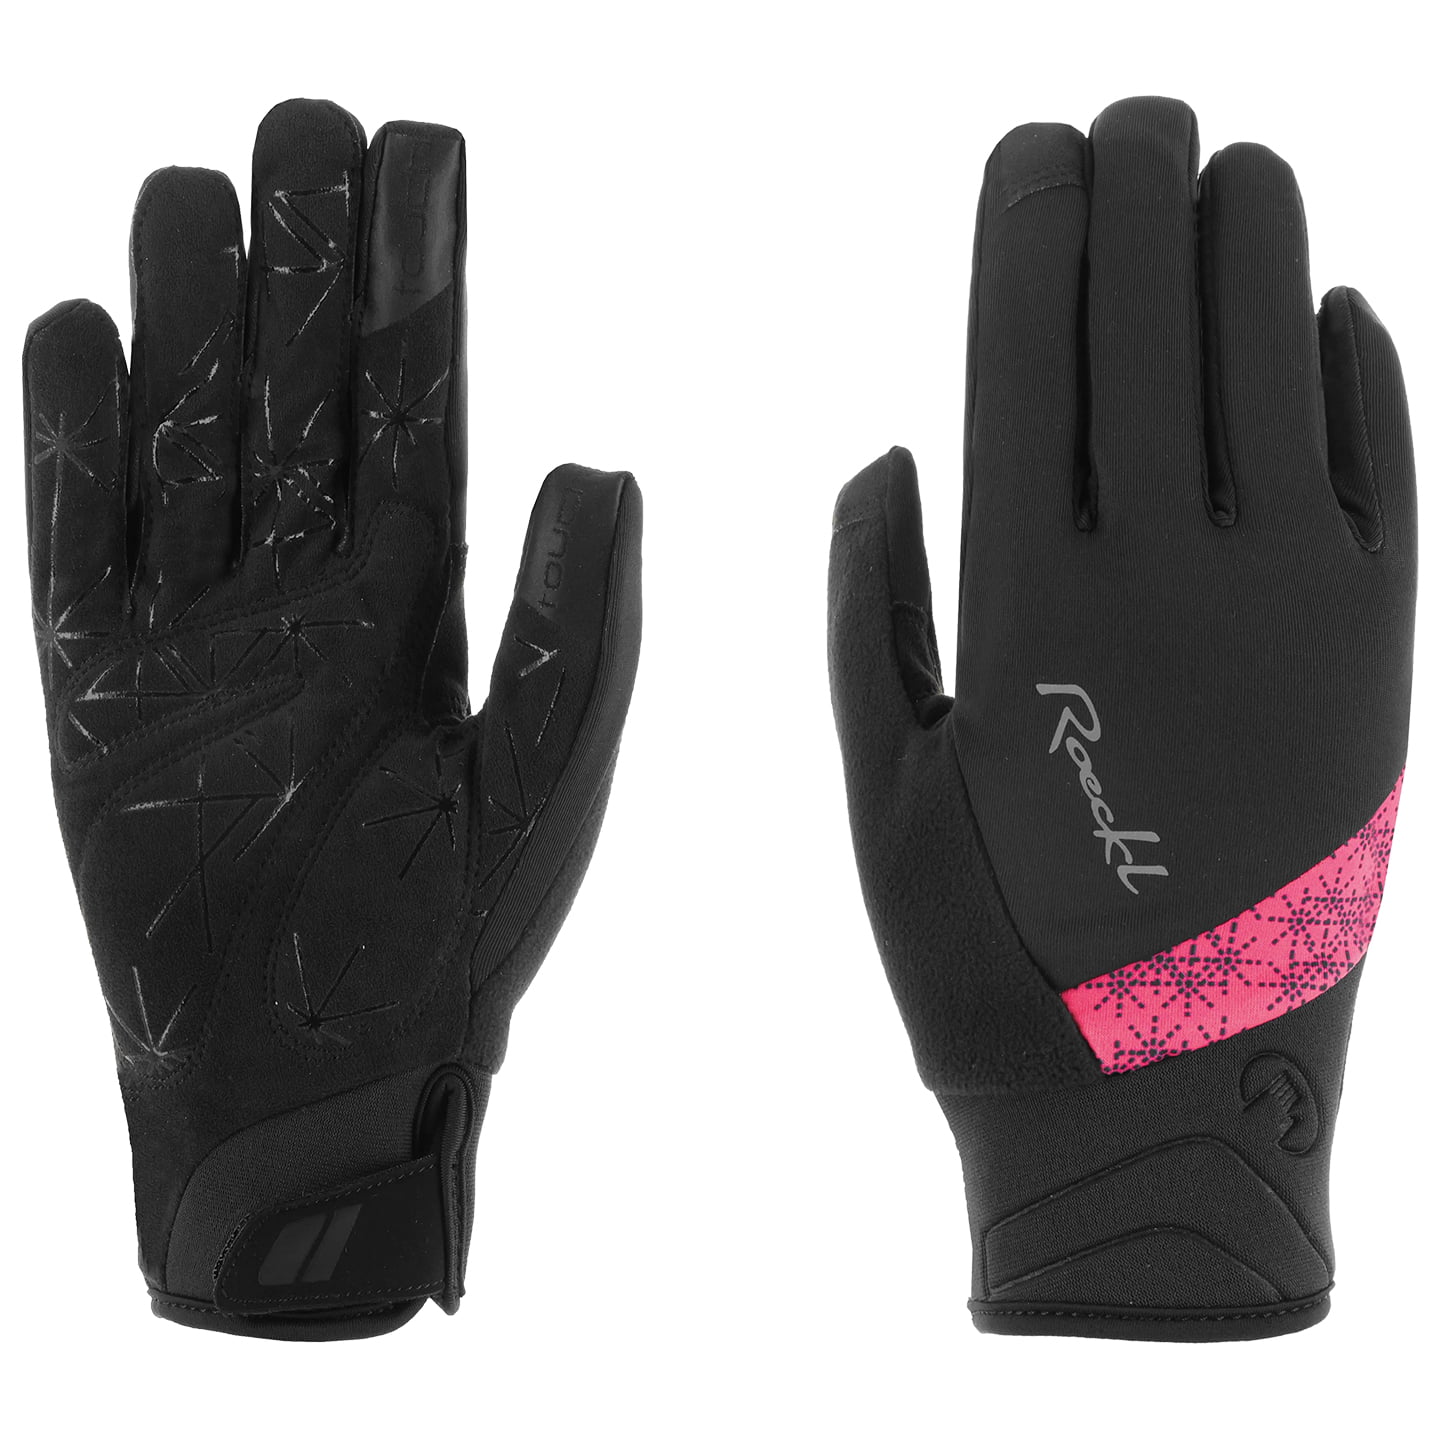 ROECKL Waldau Women’s Winter Gloves Women’s Winter Cycling Gloves, size 7,5, Cycling gloves, Cycle clothing